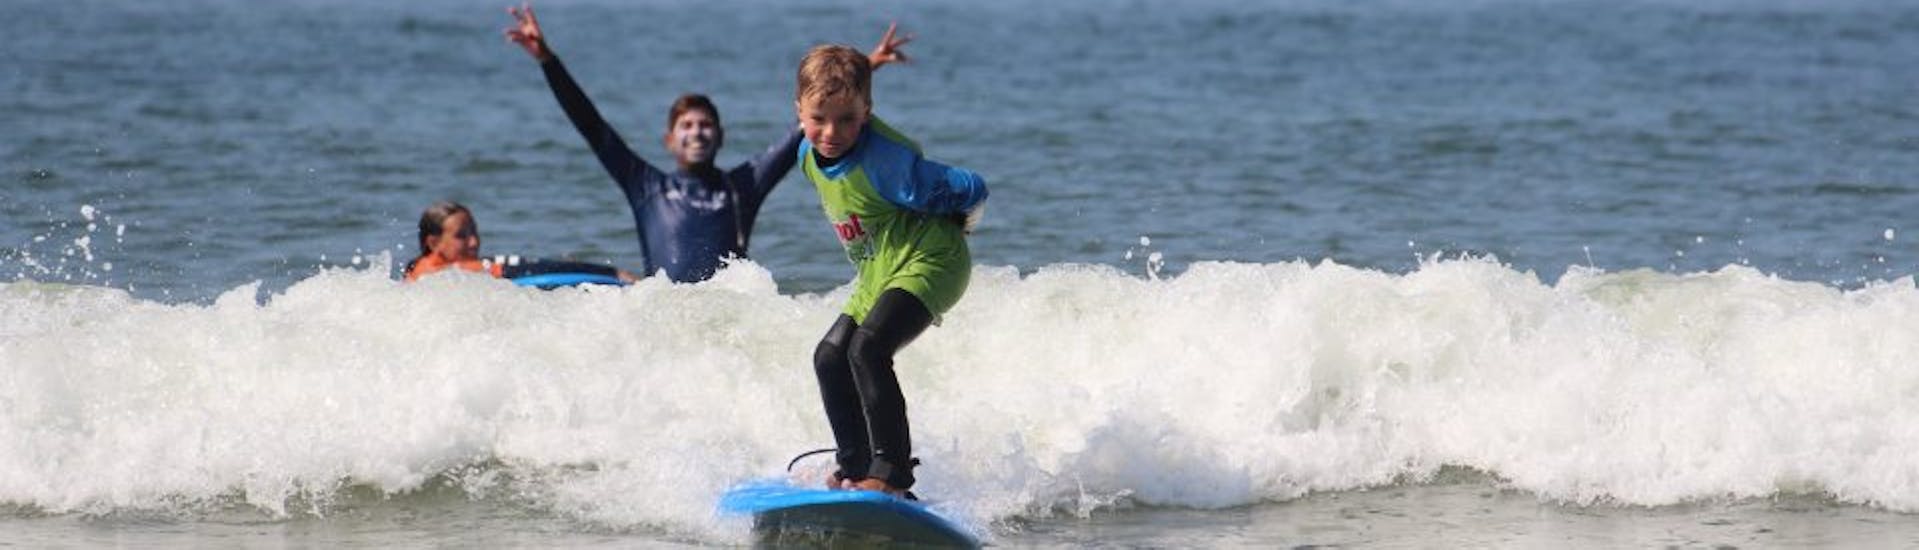 Lezioni private di surf a Matosinhos Beach da 10 anni.